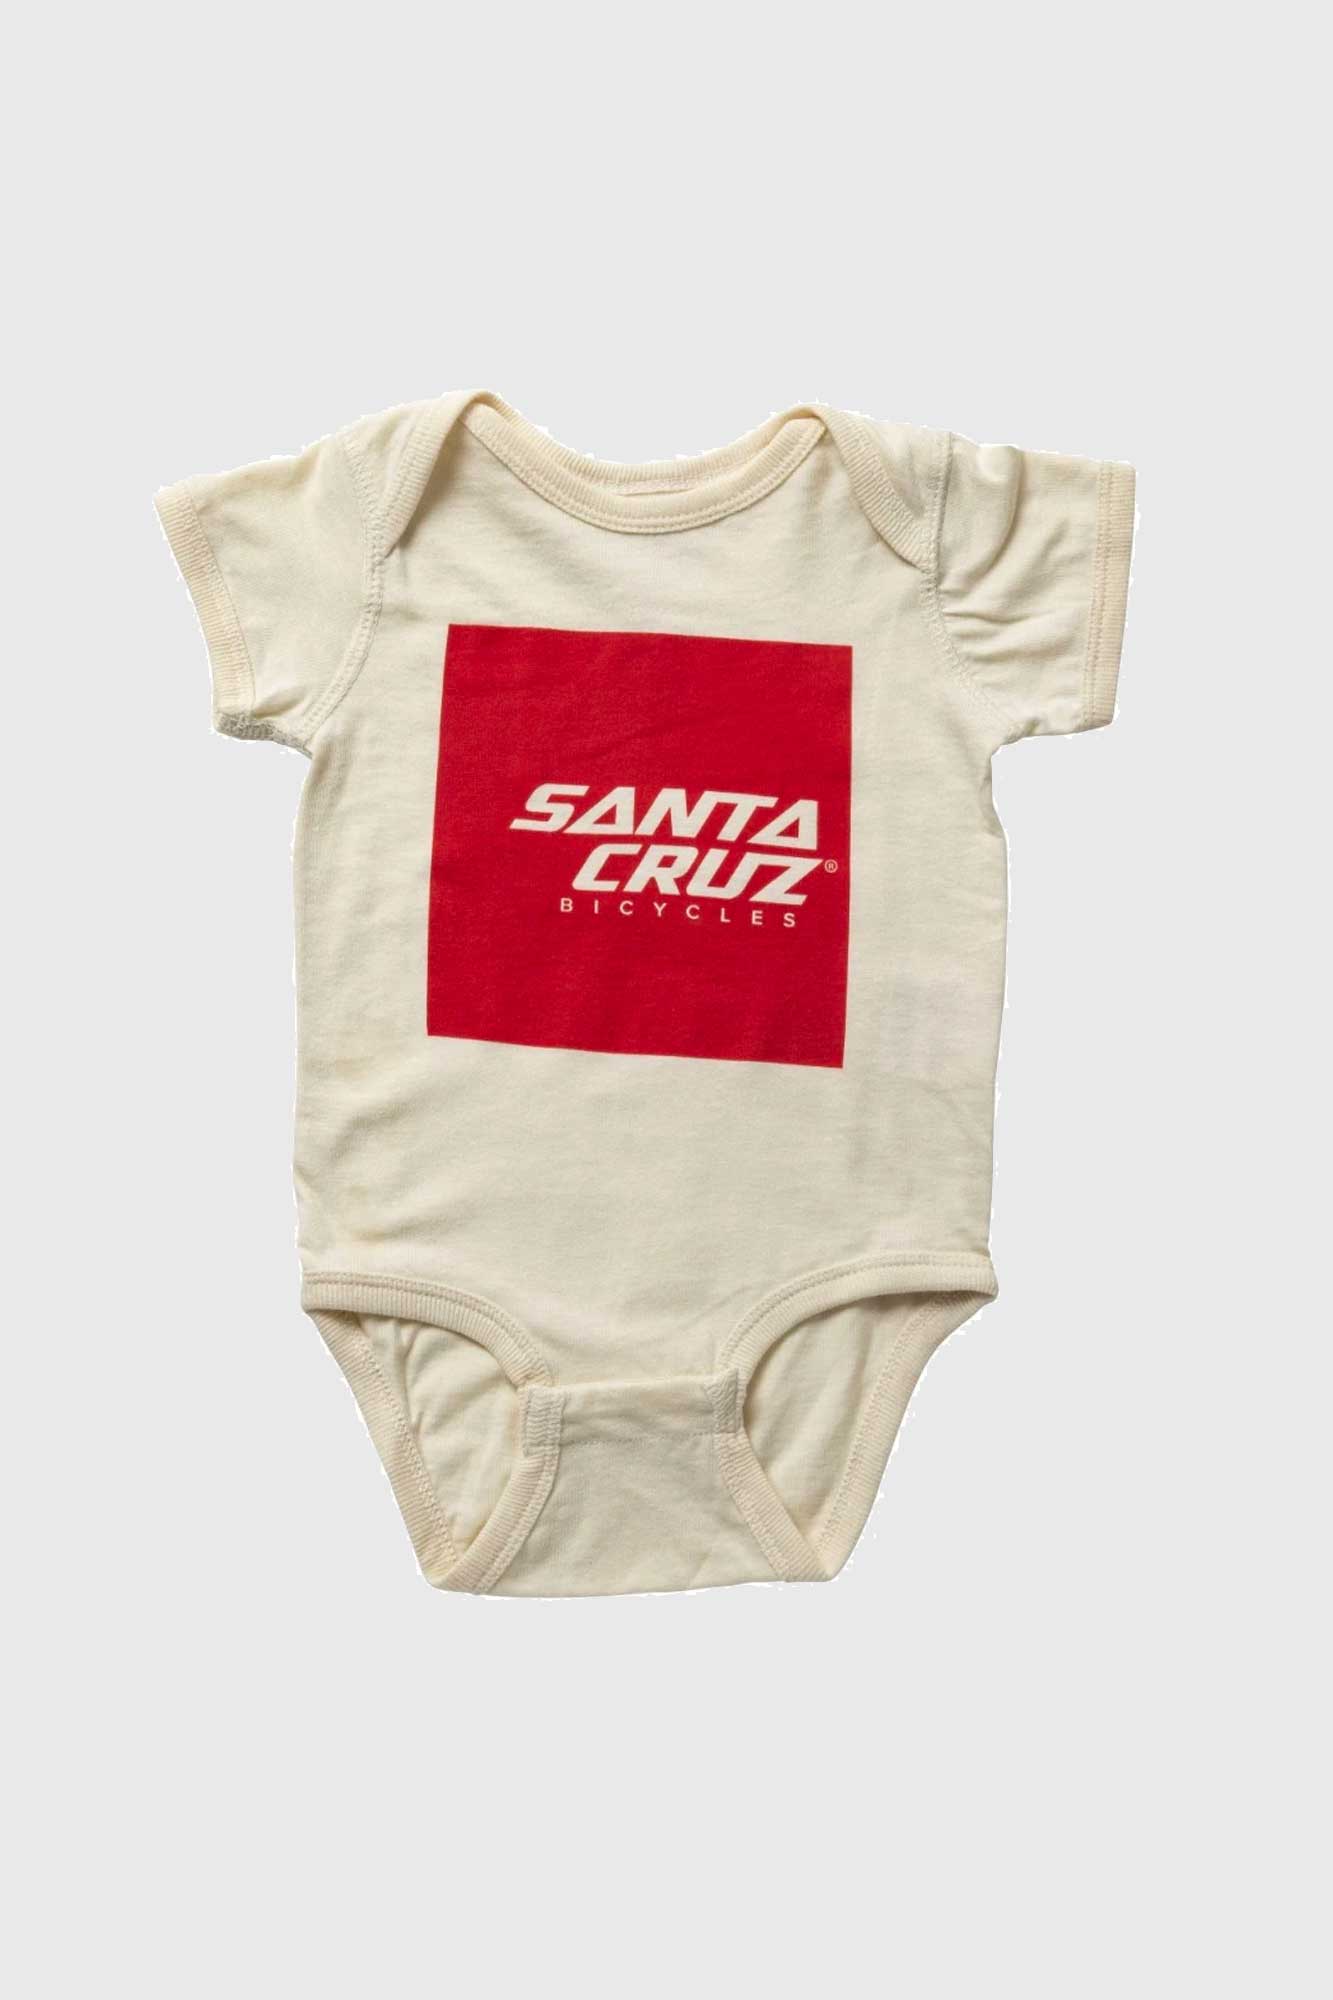 Santa Cruz Baby One-Piece